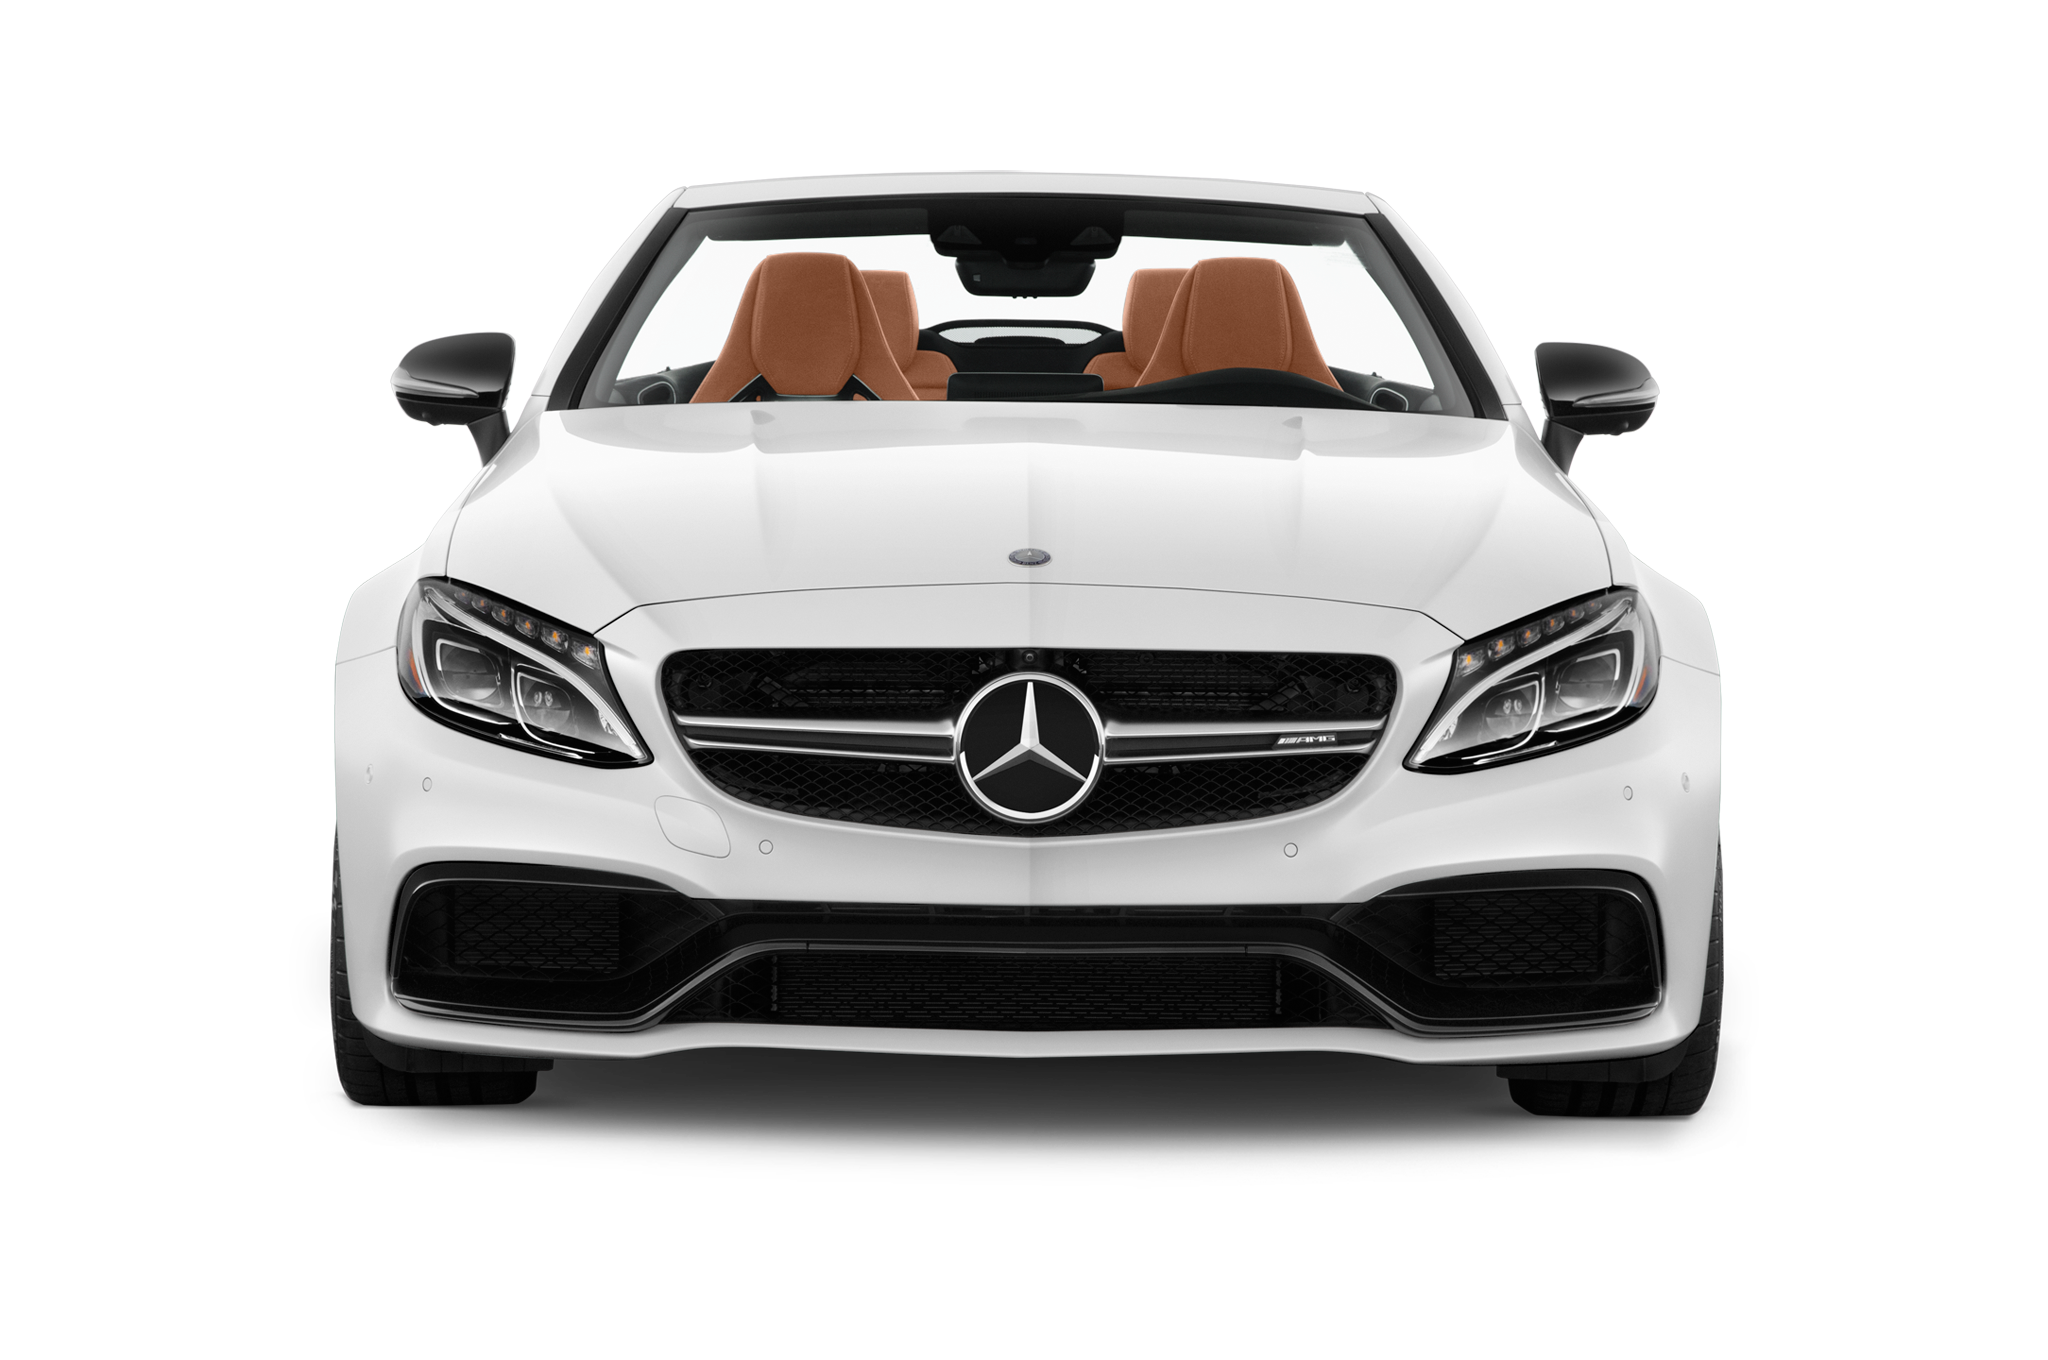 Mercedes Benz Car Images Hd